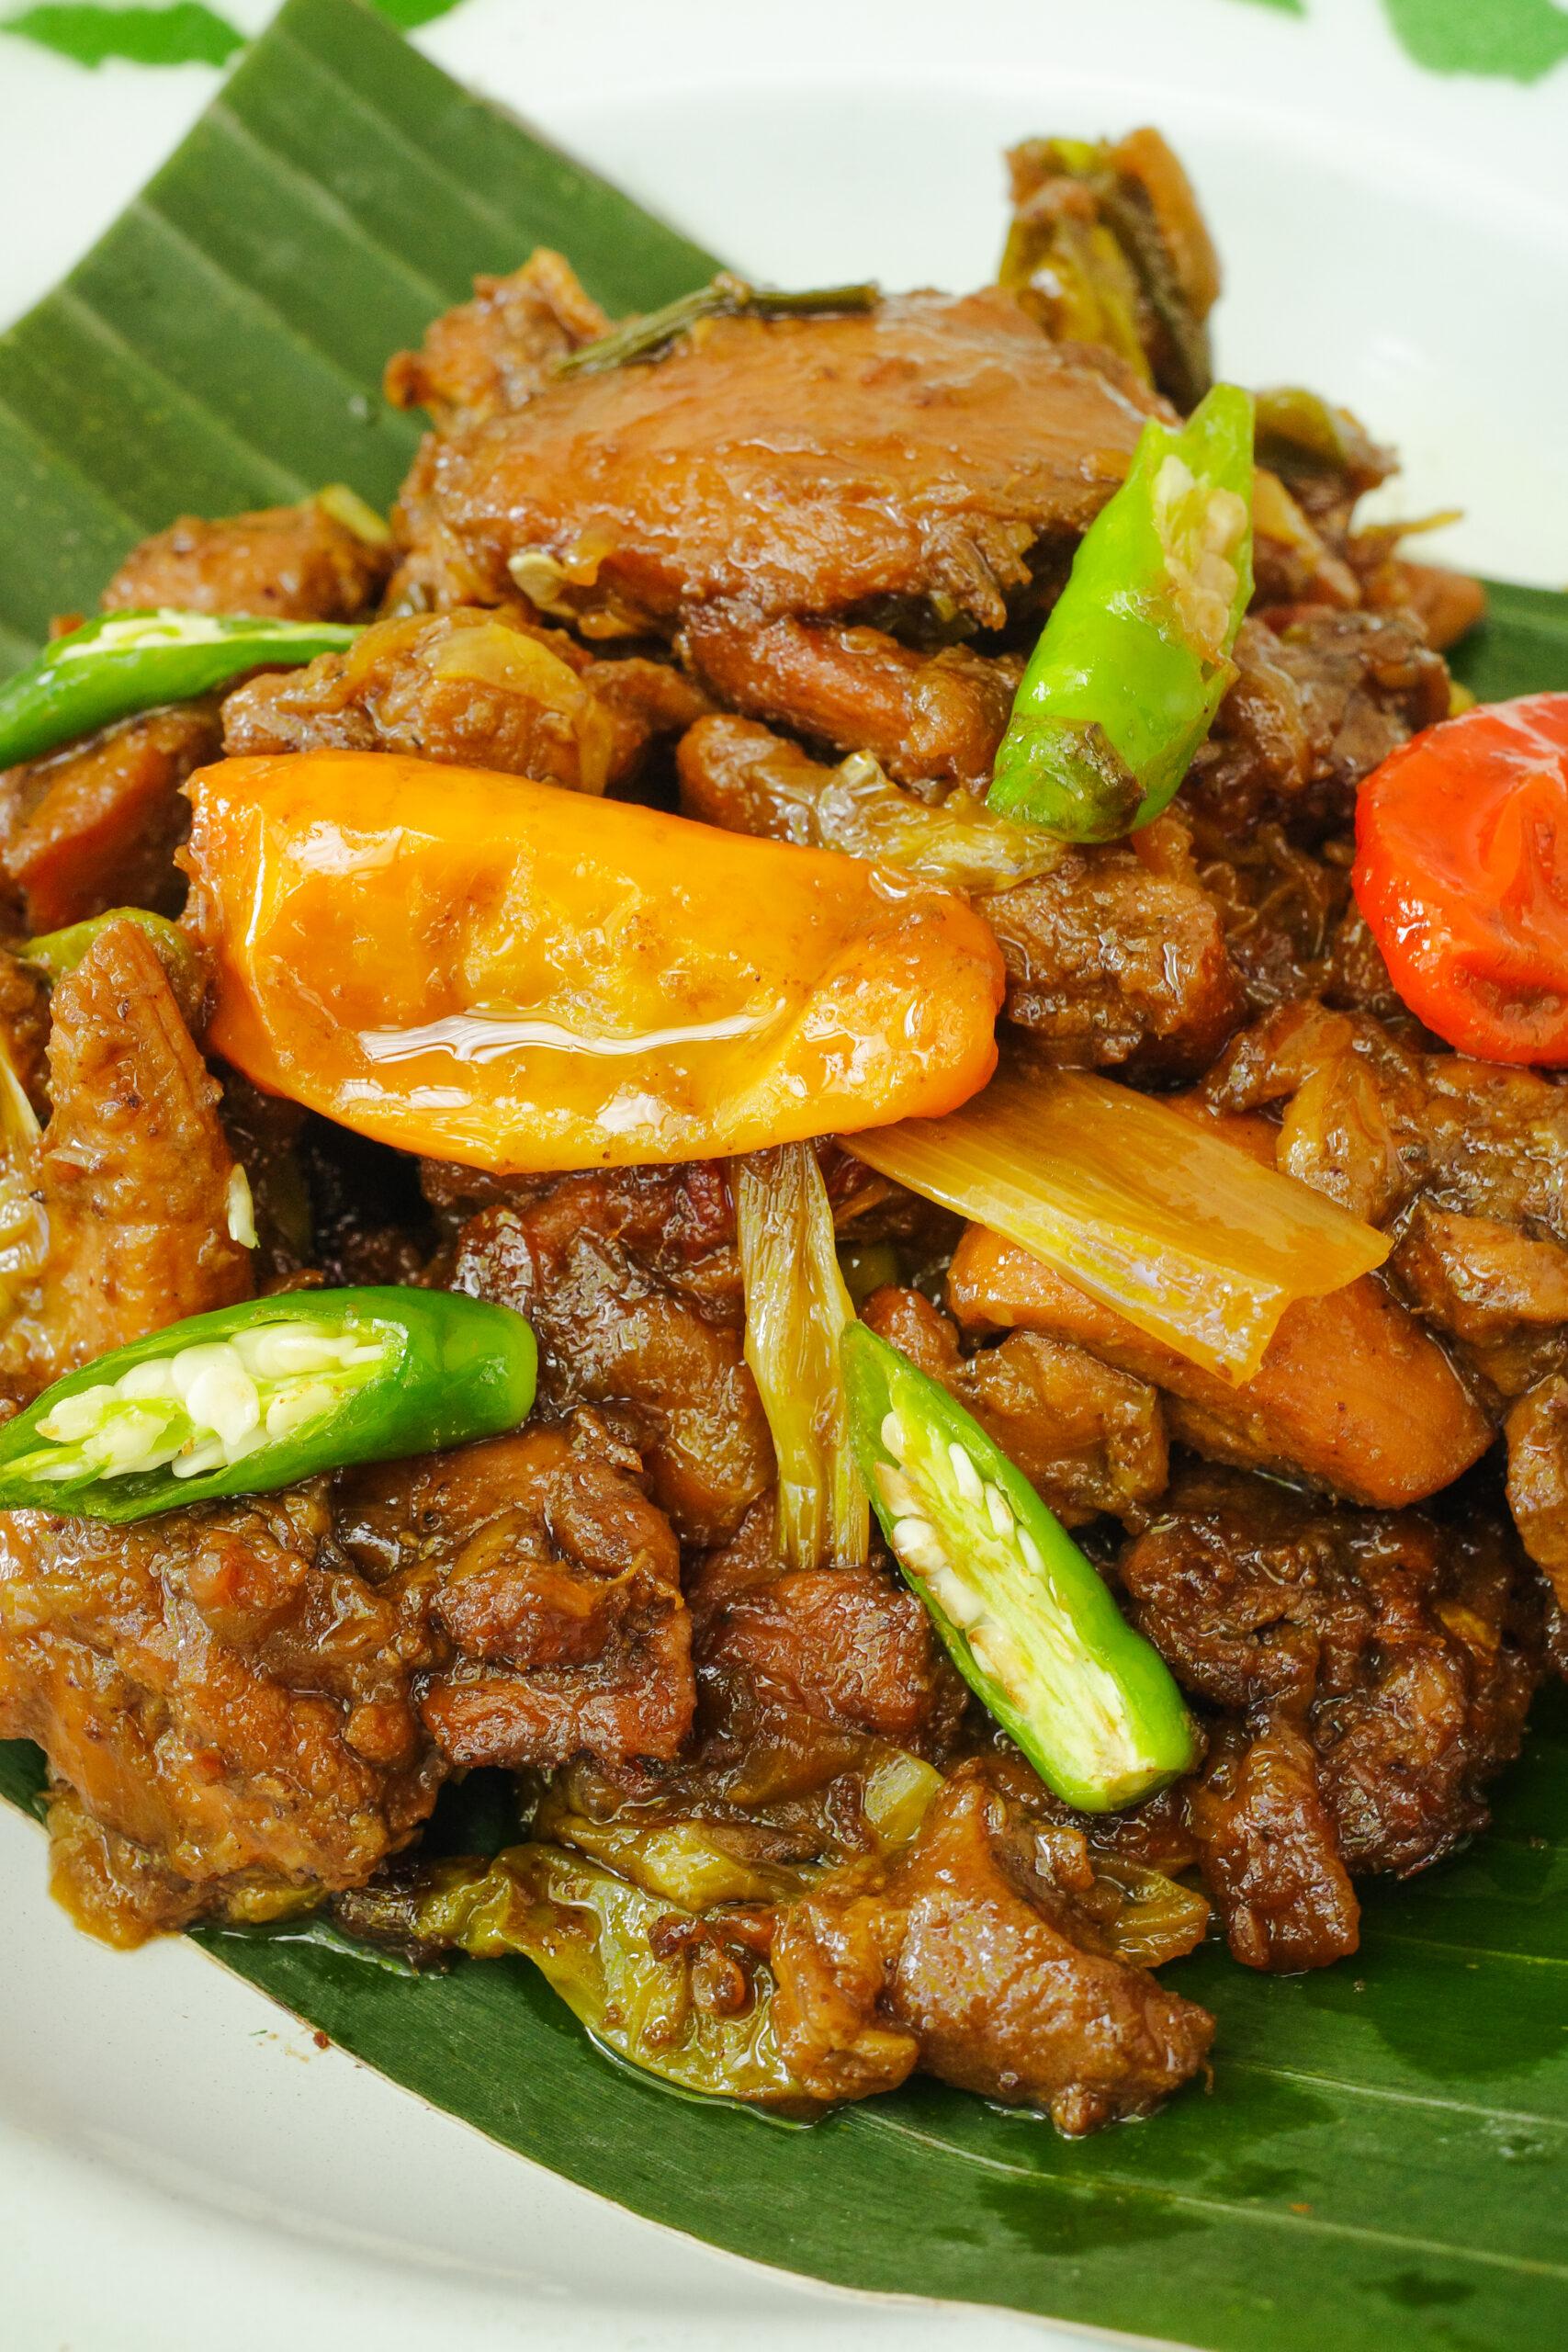 Lazy Susan Shares An Intriguing Betawi Local Food